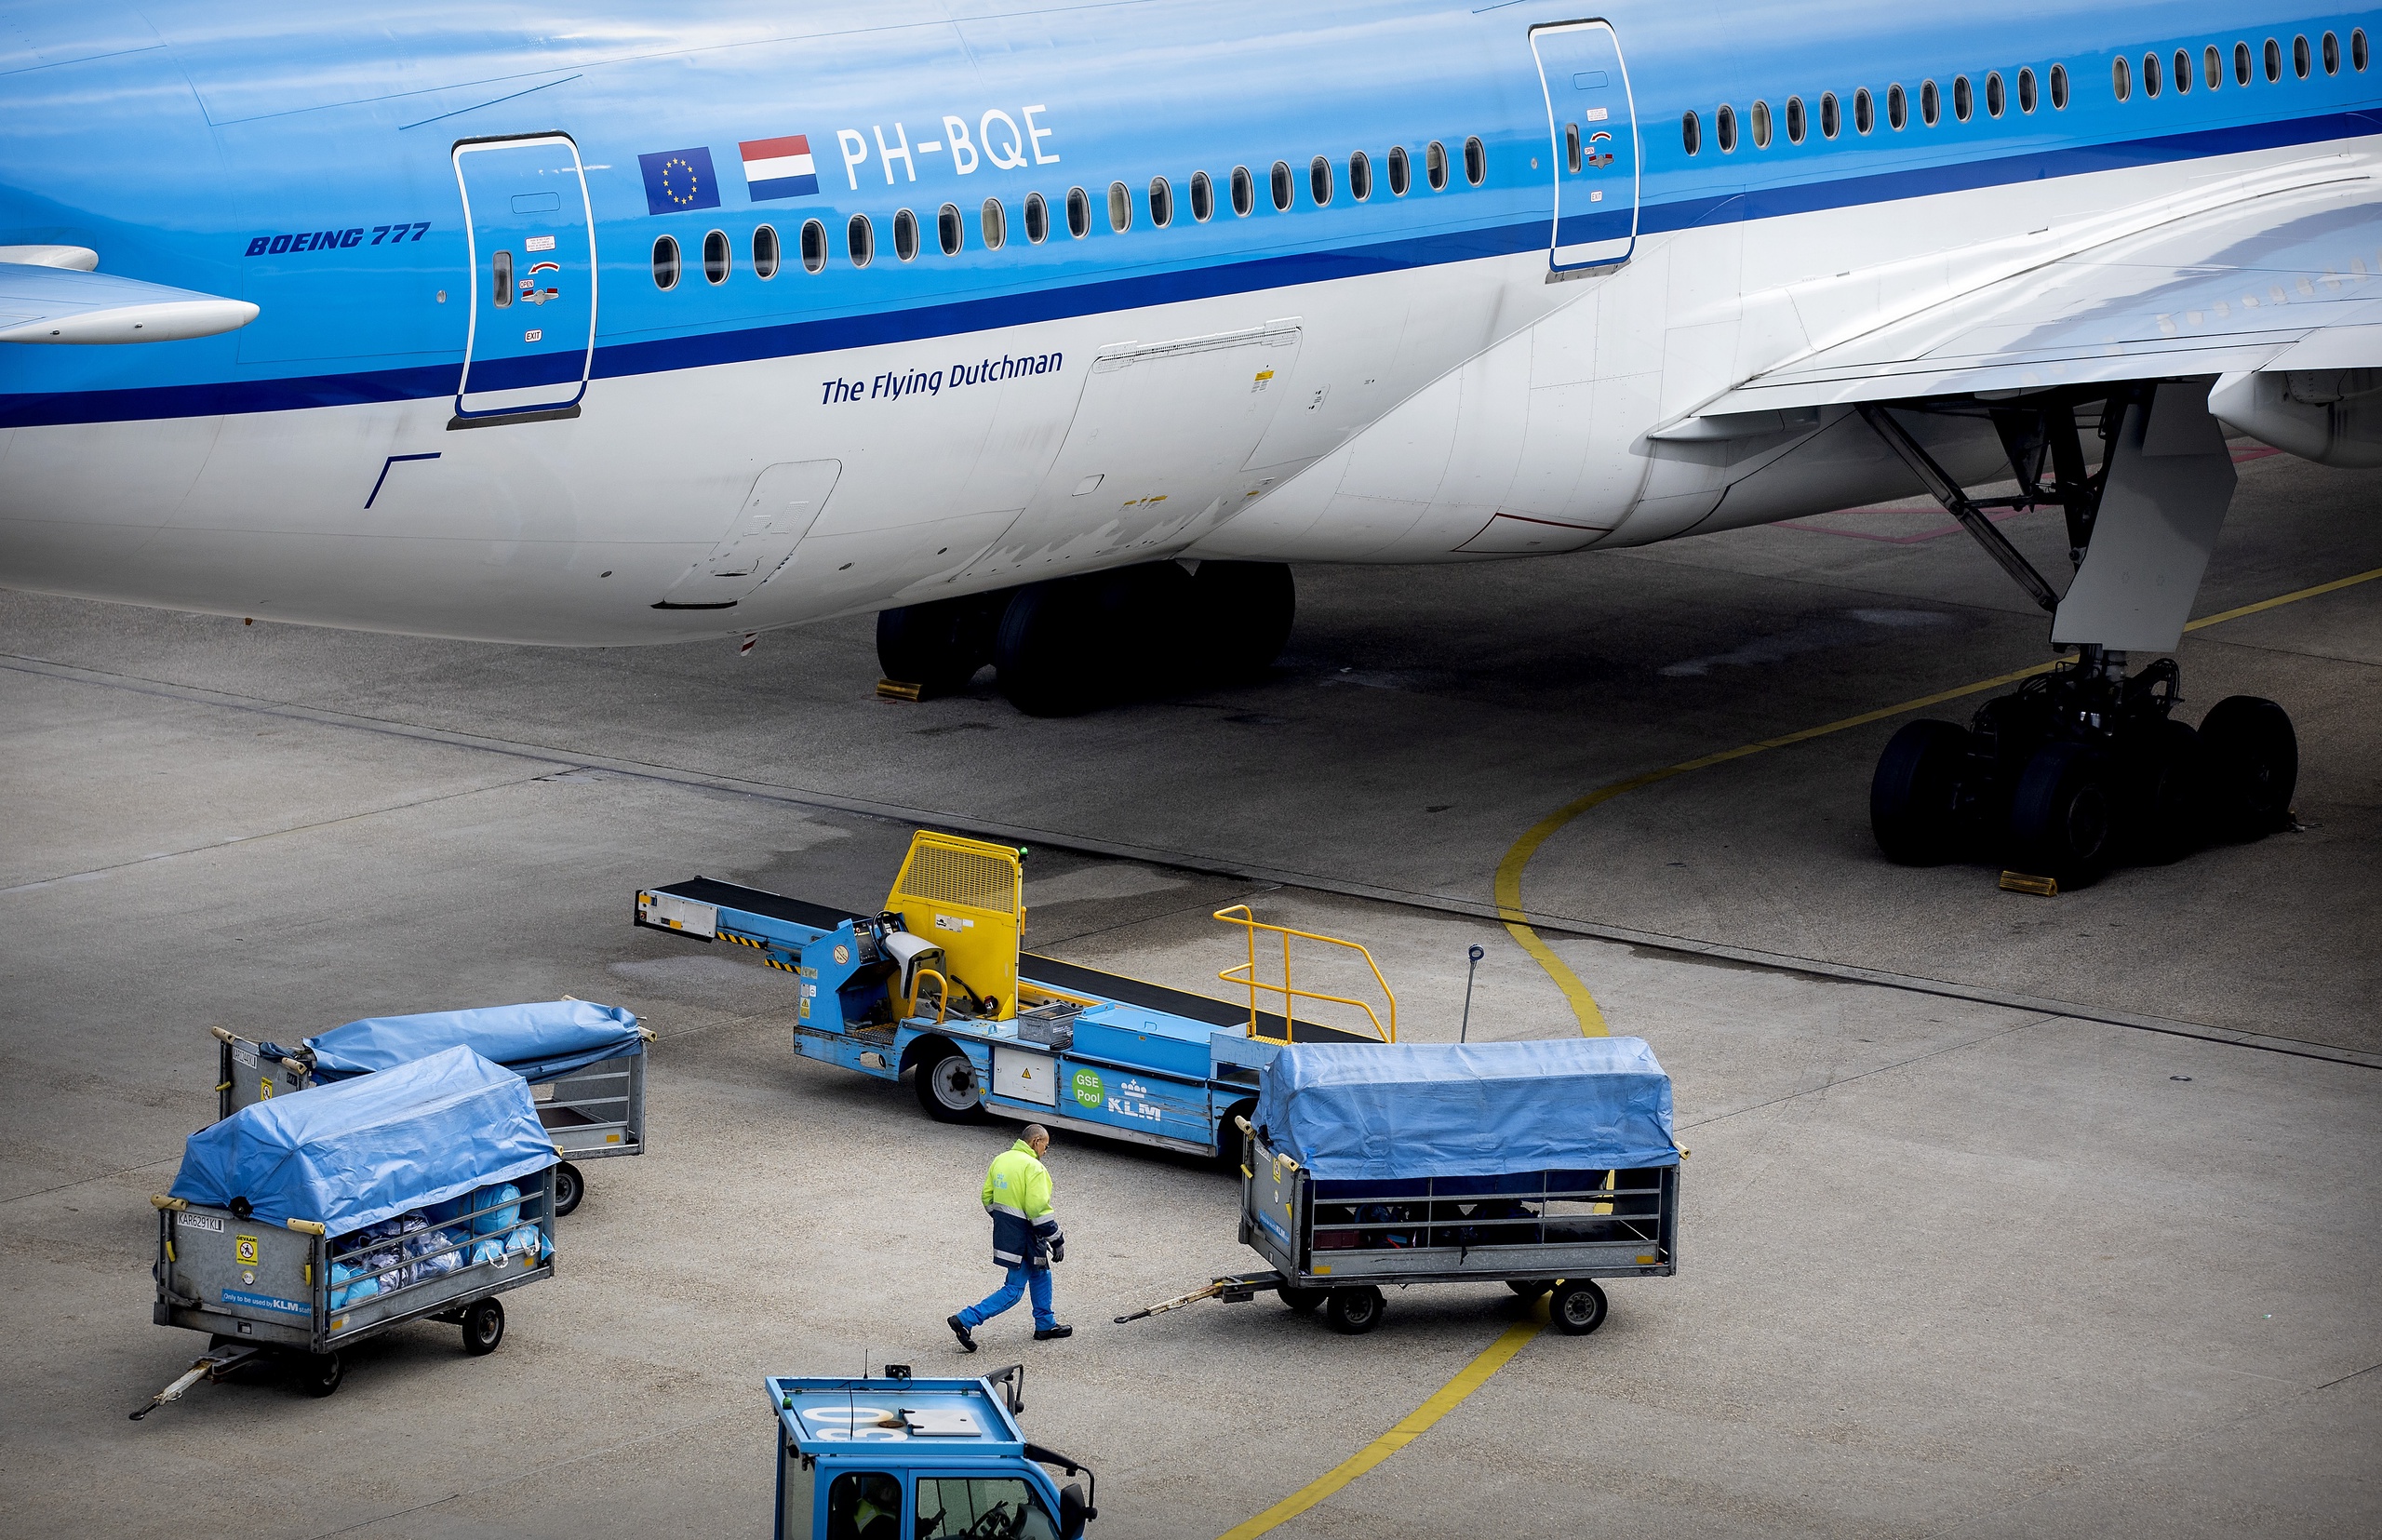 Bagage afhandeling van KLM op de luchthaven van Schiphol. Schiphol beschermt zijn personeel onvoldoende tegen blootstelling aan schadelijke vliegtuiguitstoot. Dat concludeert de Nederlandse Arbeidsinspectie. 